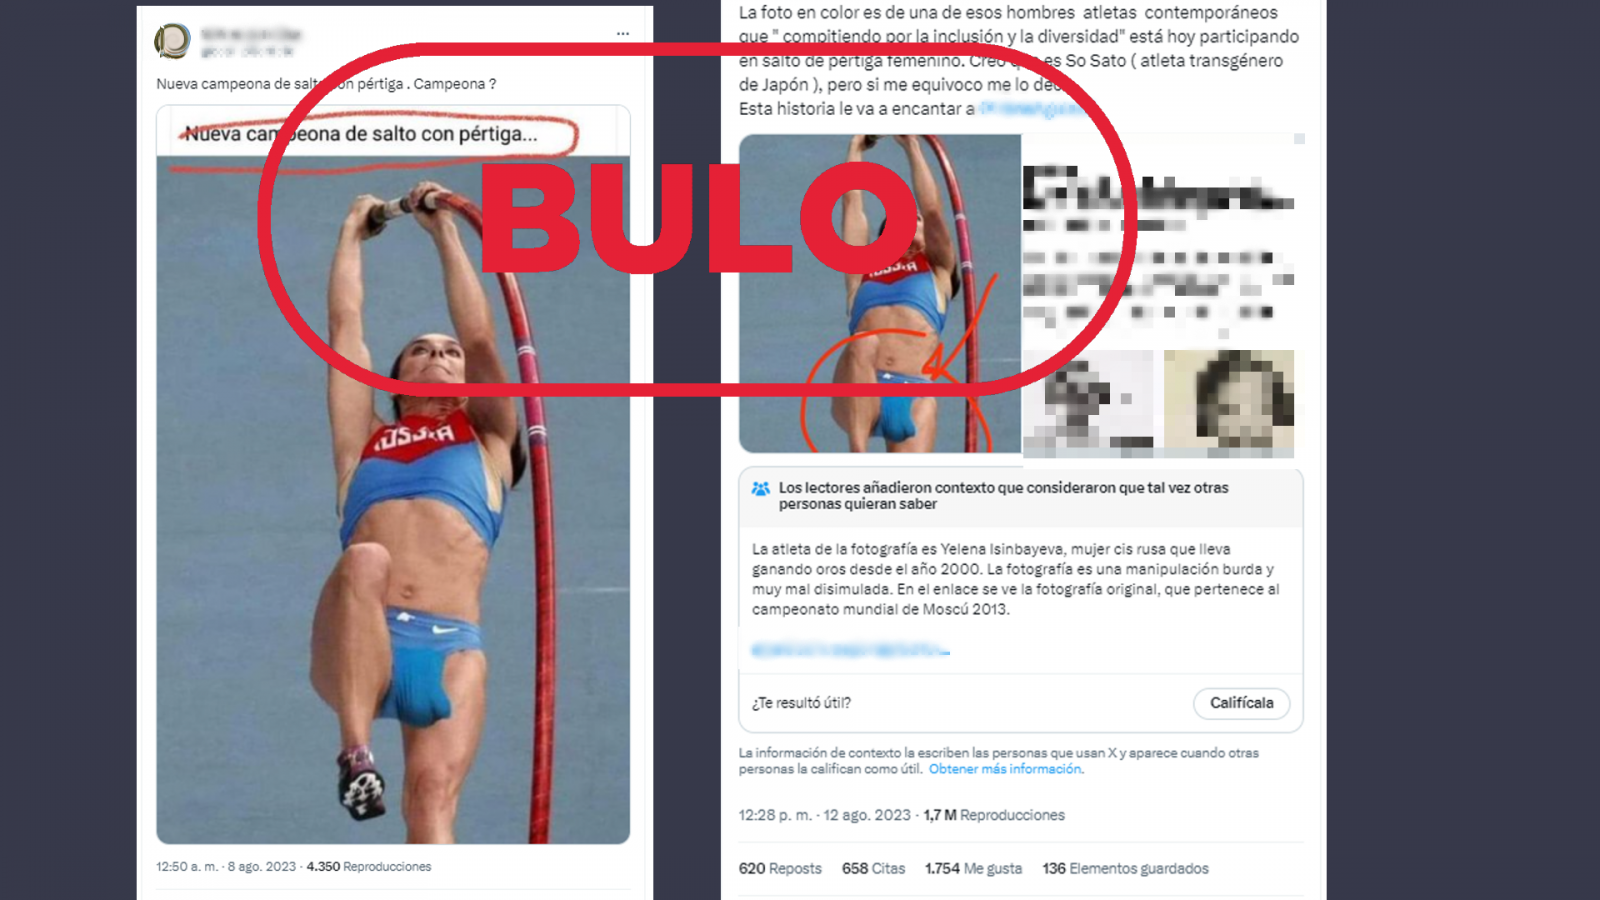 Mensajes de Twitter que comparten la fotografía manipulada, con el sello Bulo en rojo